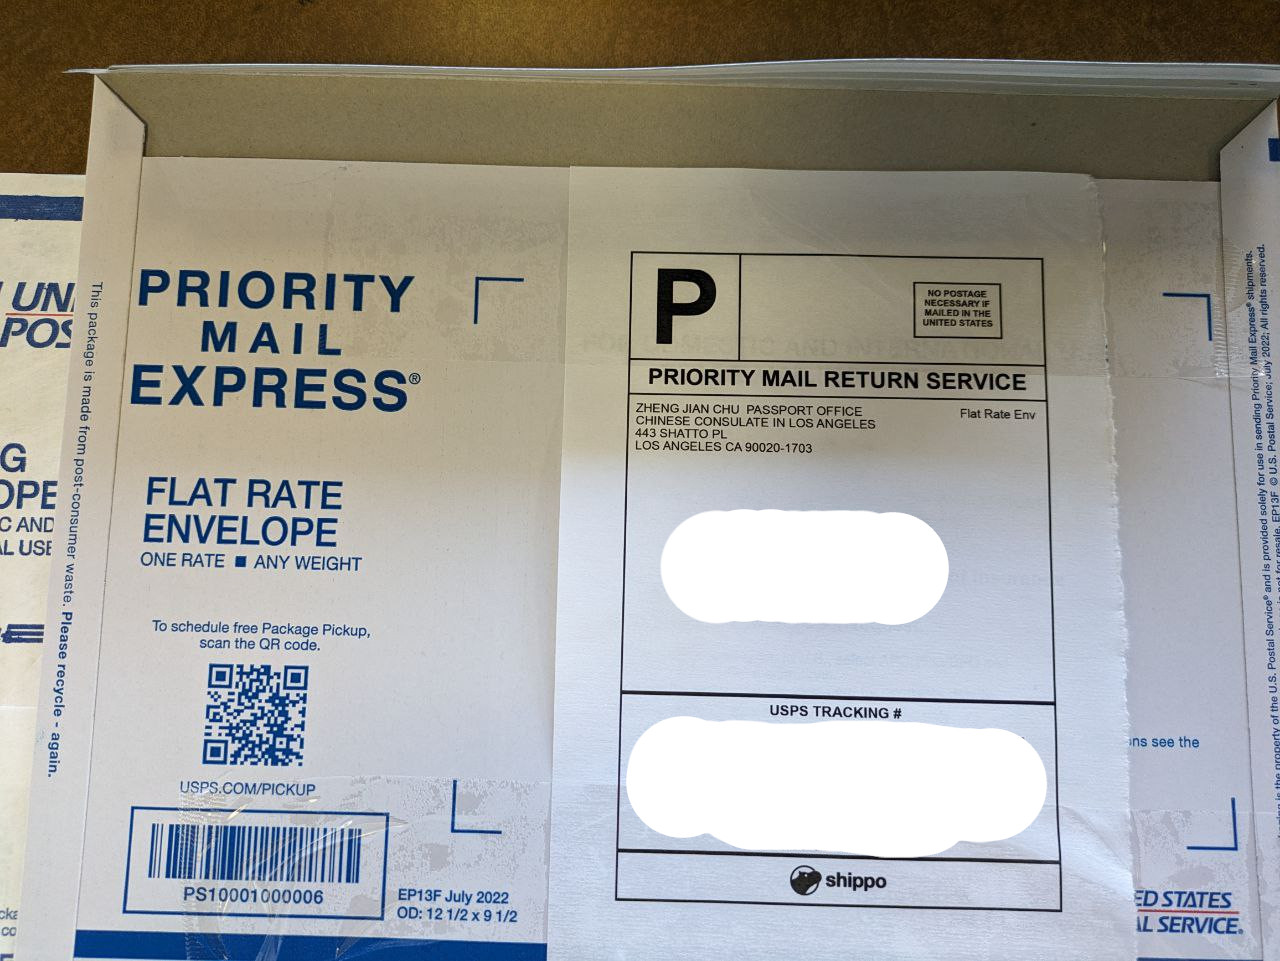 回邮信封，我这里拿错了，拿成了一个 USPS Priority Mail Express 的信封，应该拿不带 Express 的信封